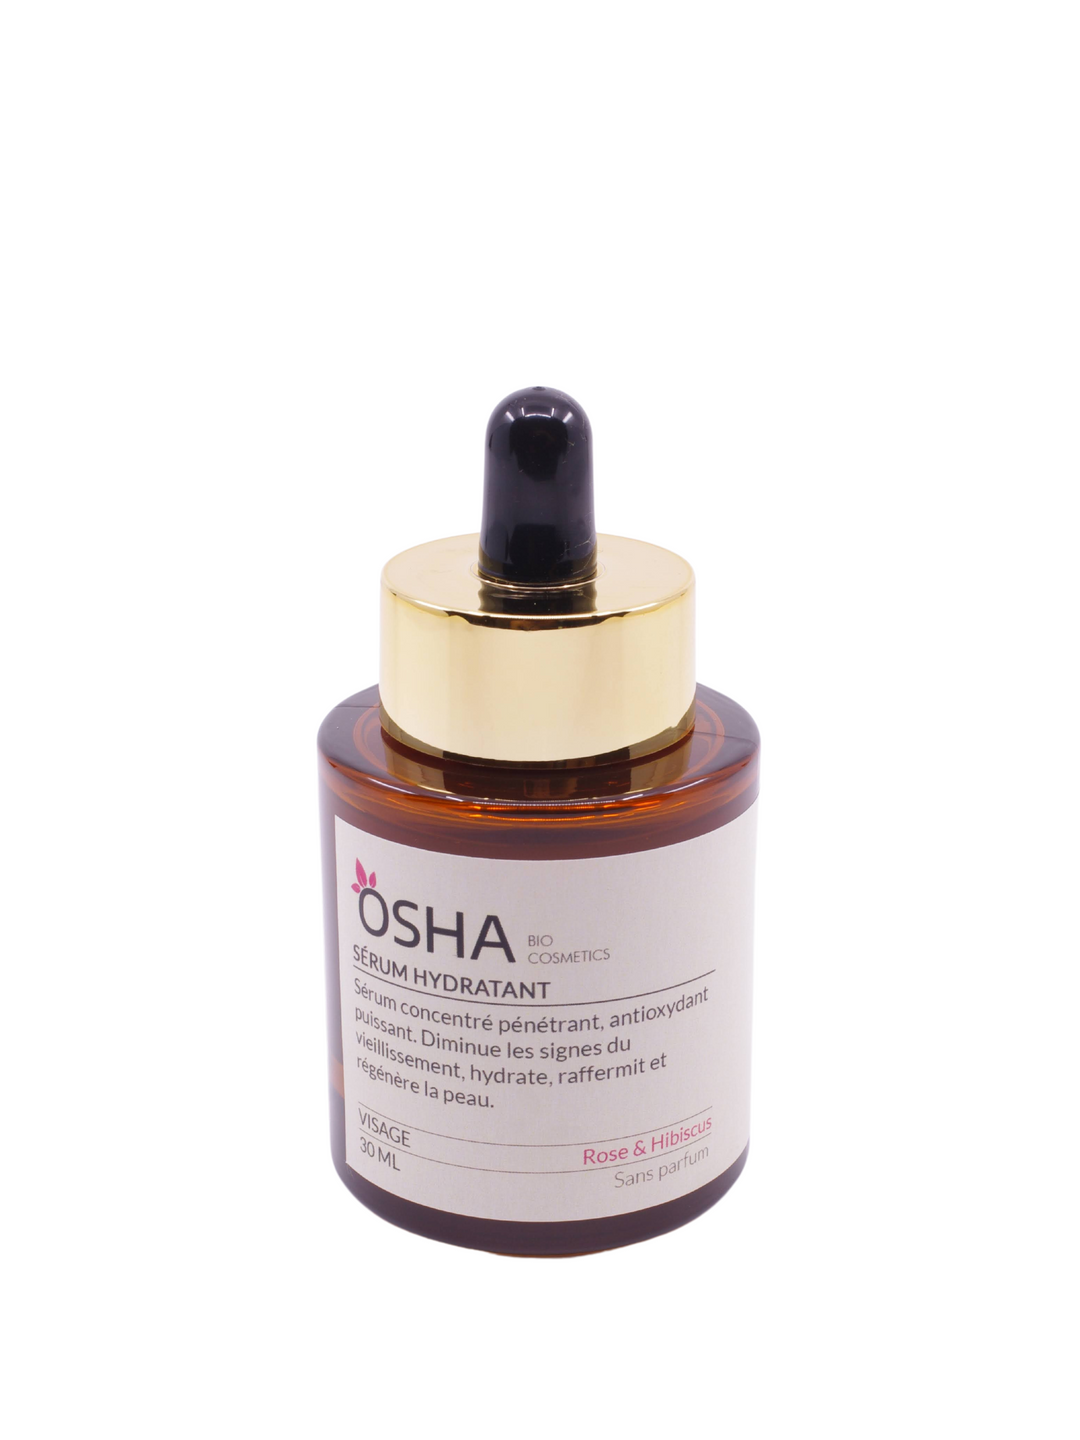 Sérum Hydratant Acide Hyaluronique Rose & Hibiscus - OSHA Biocosmetics